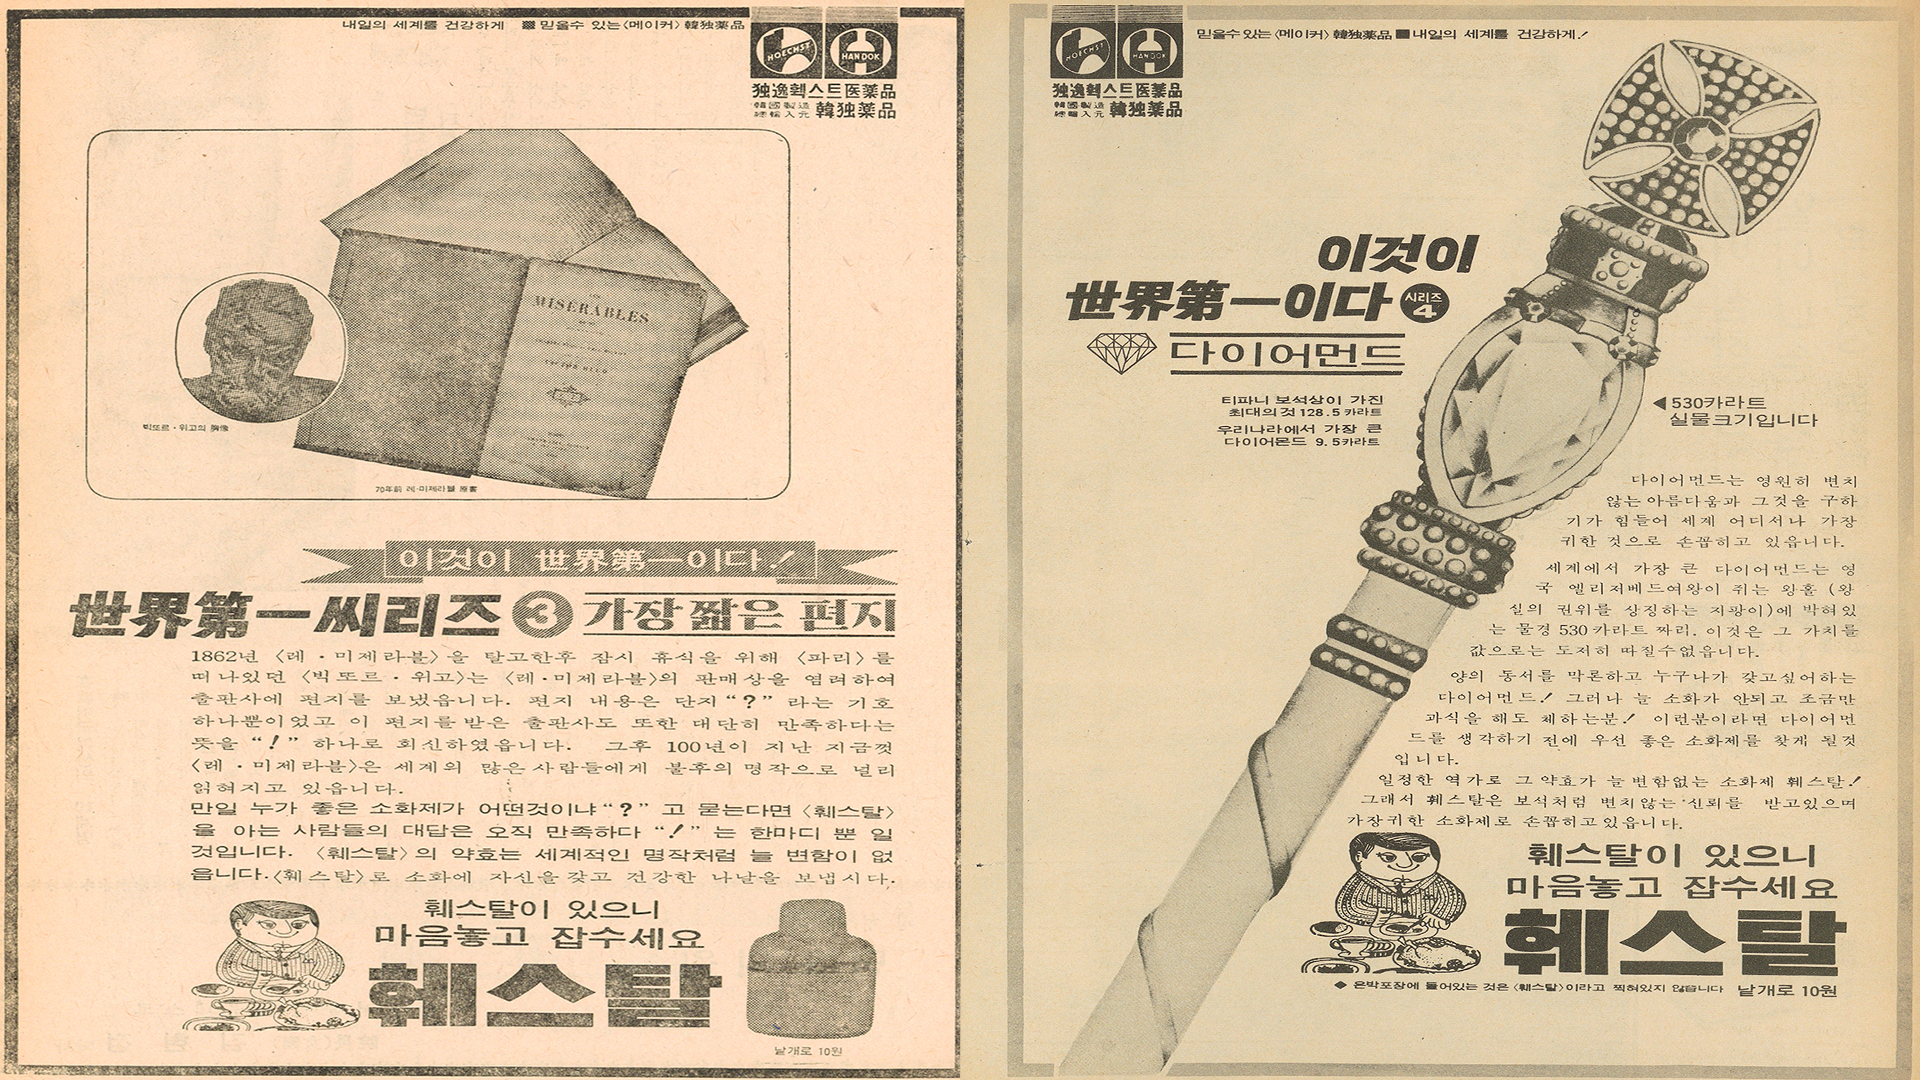 제10호(1968년 11월 24일자)와 제20호(1969년 2월 9일자)에 게재된 소화제 광고